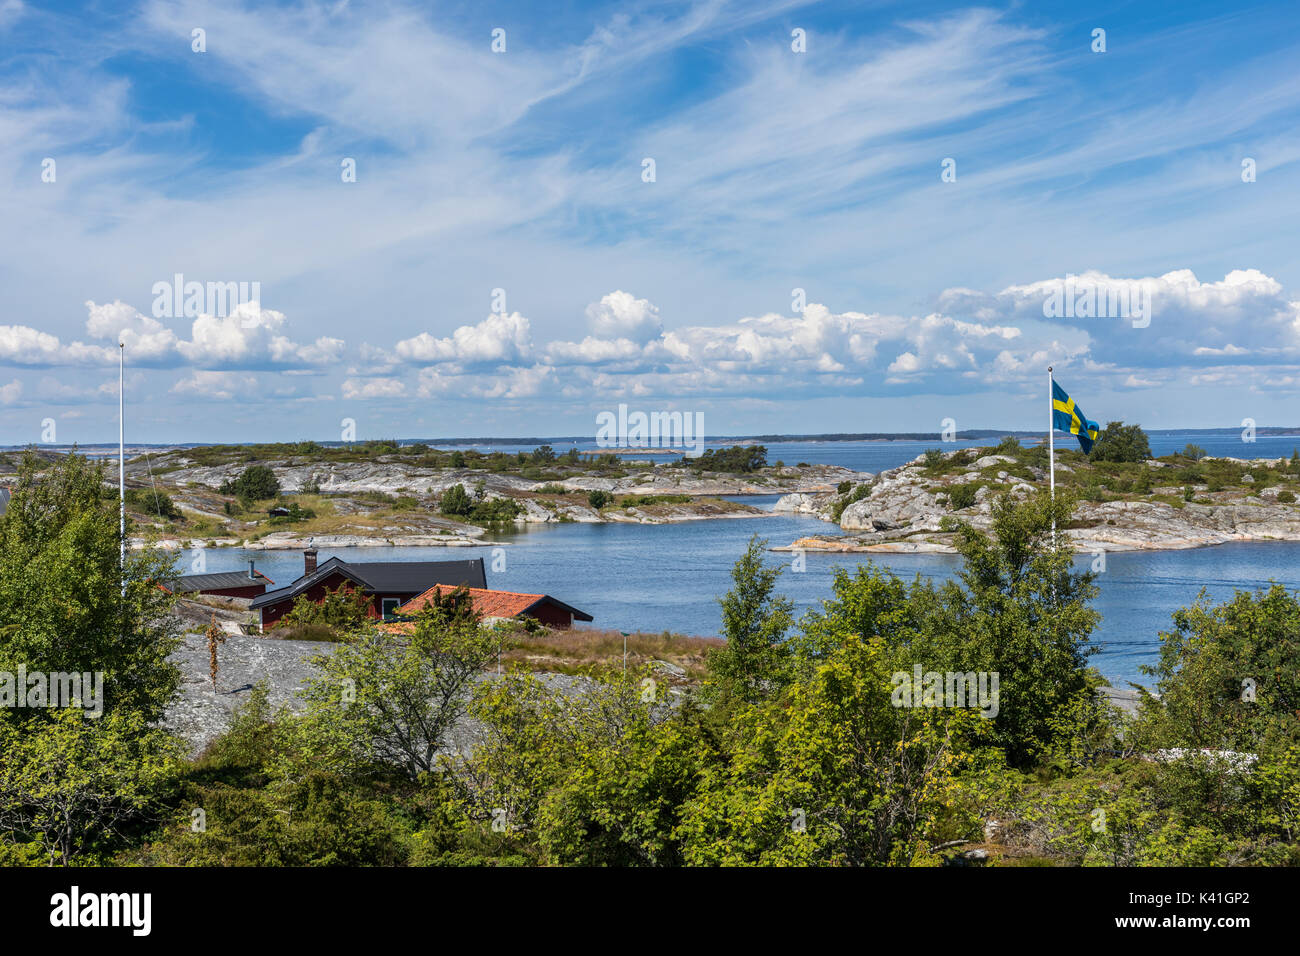 Häuser am Wasser auf einer Insel in den äußeren Bereichen des Stockholmer Schären mit schwedischer Flagge Stockfoto